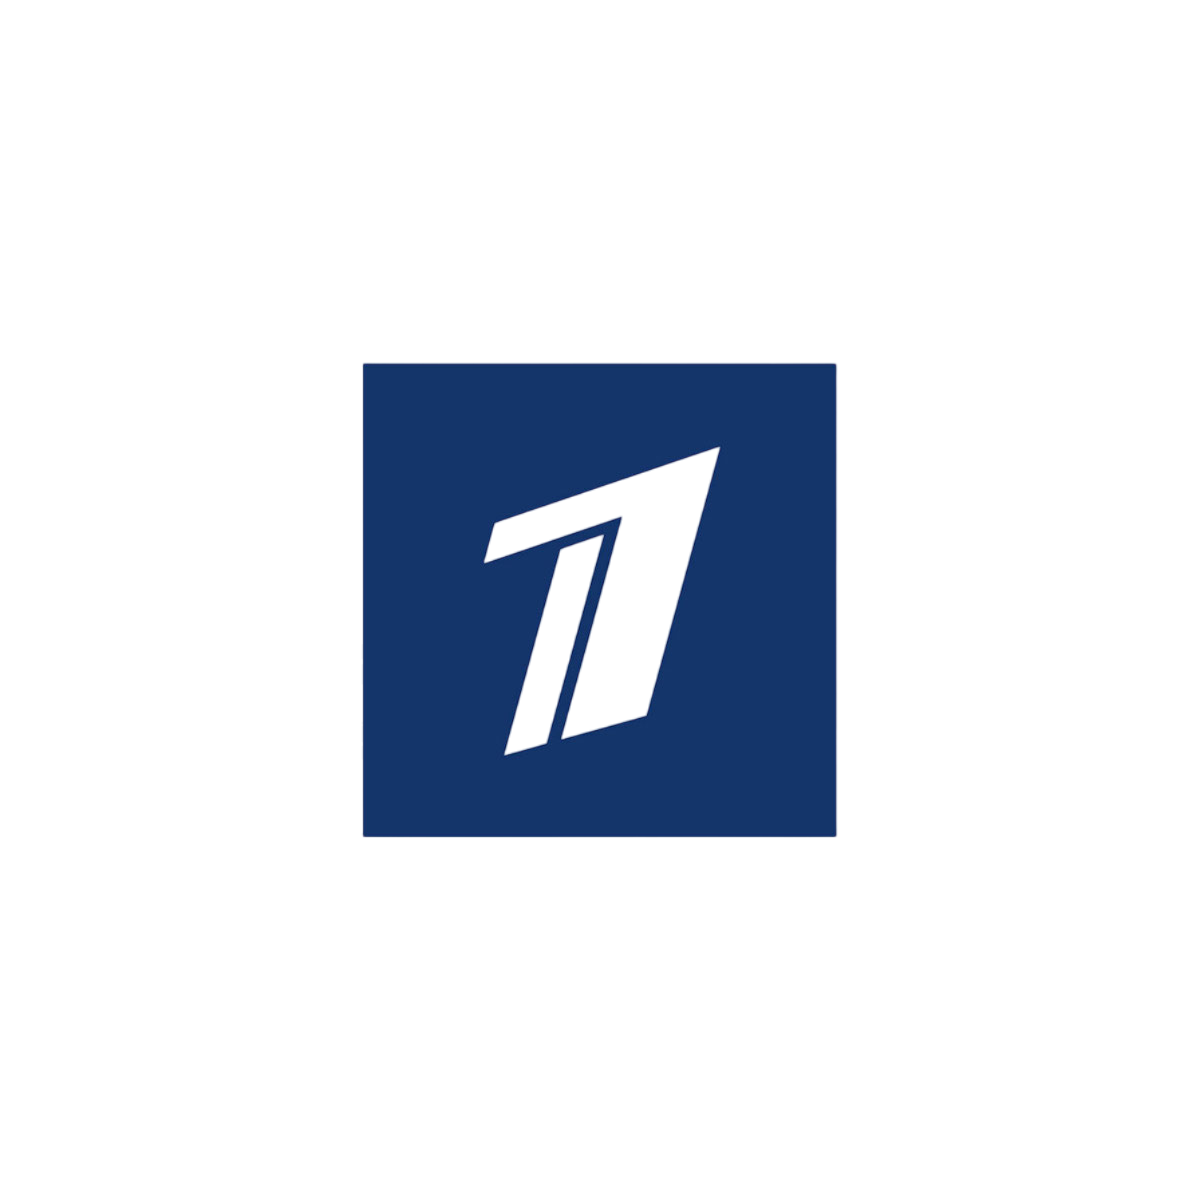 Https www 1tv ru shows. Первый канал. Лого первого канала. Канал логотип первый Кана. Телеканал первый канал.